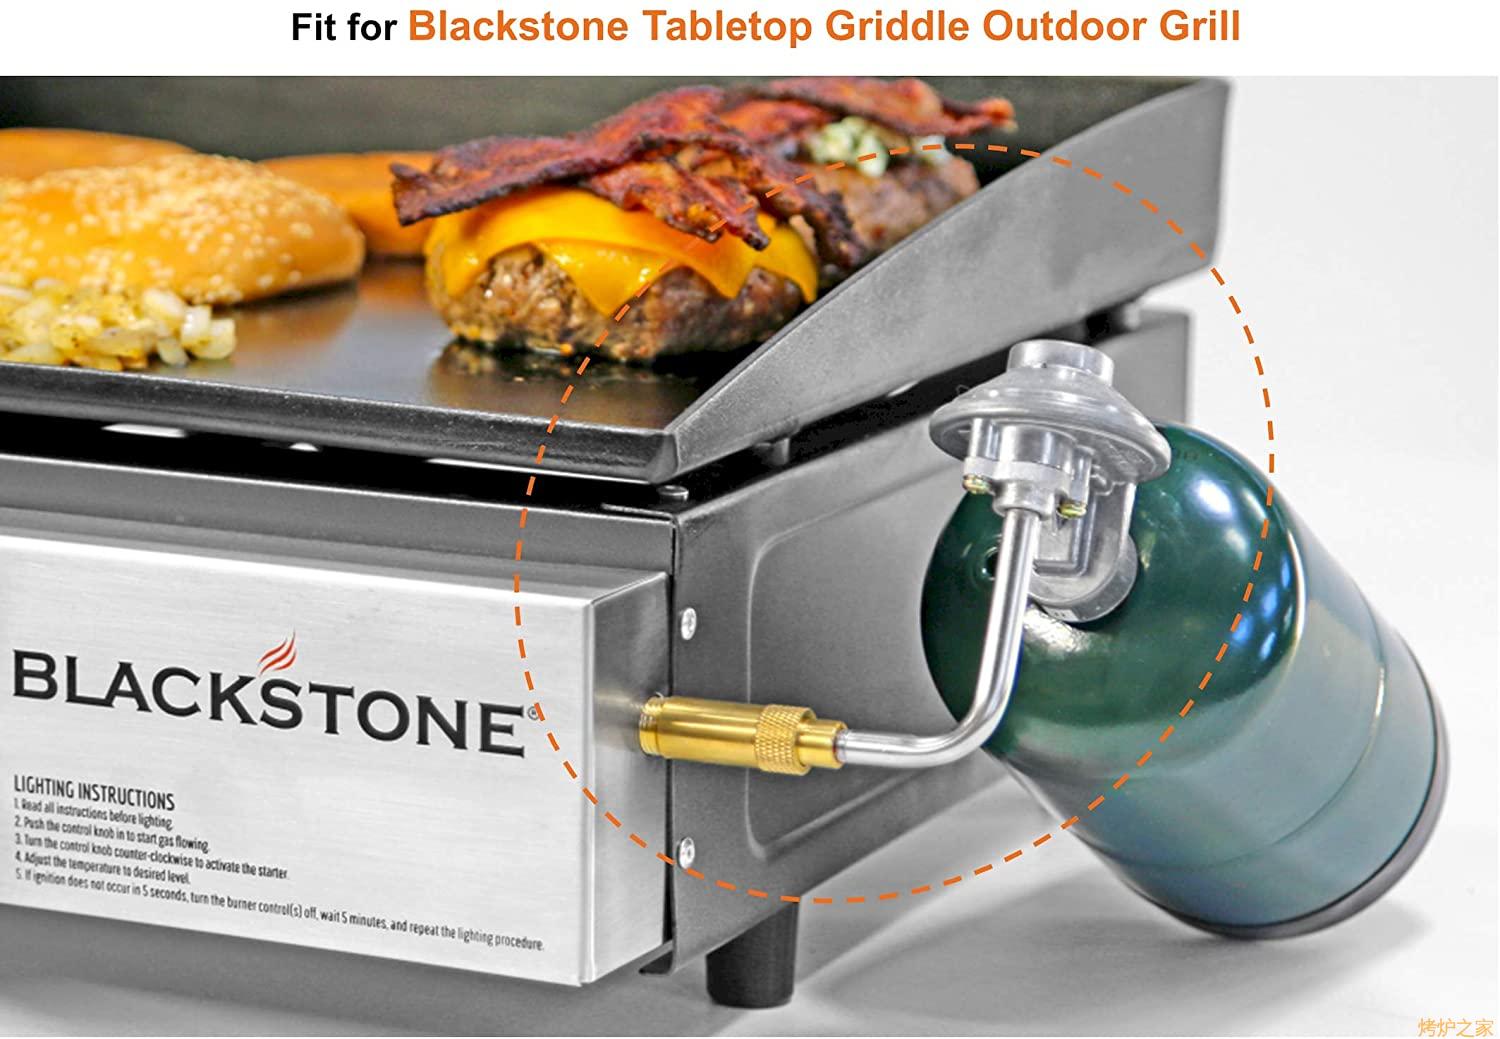 黑石Blackstone regulator 烤炉 调压阀 铁板烧 griddle 调压器